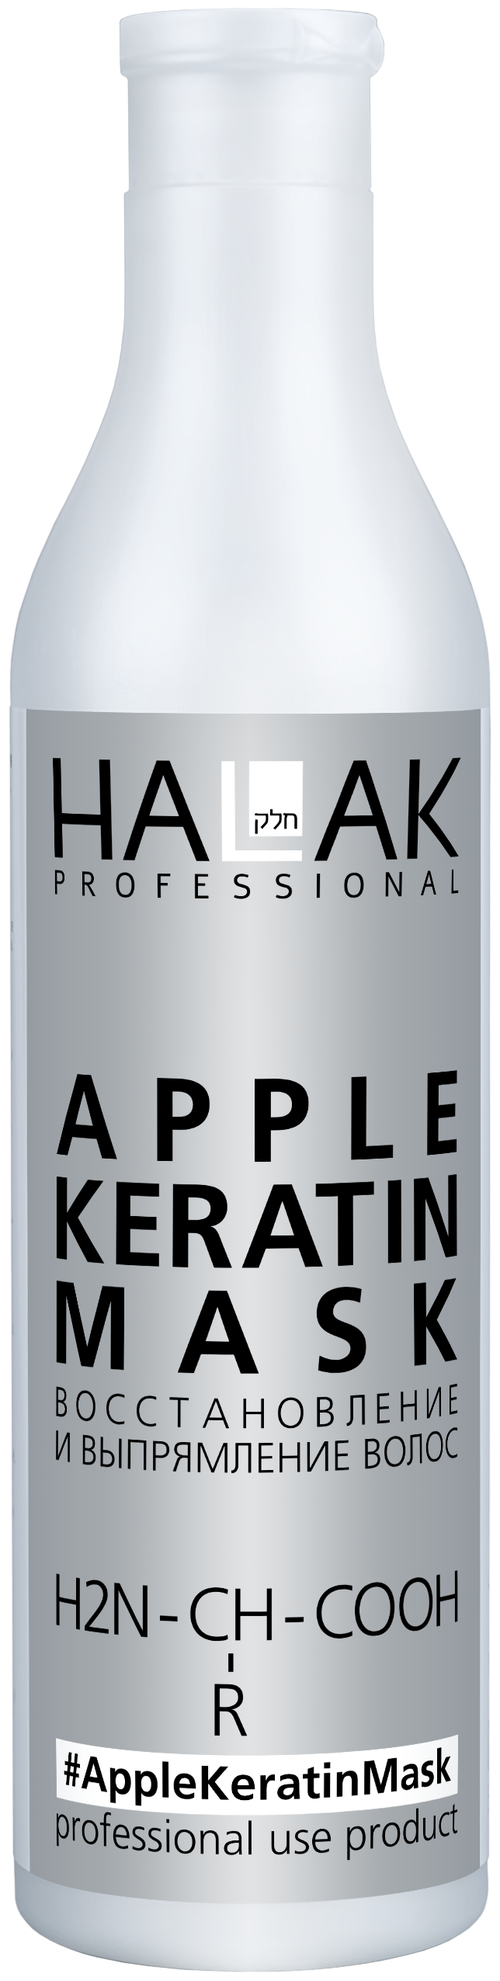 HALAK Professional Маска для восстановления и выпрямления волос, 200 мл, бутылка